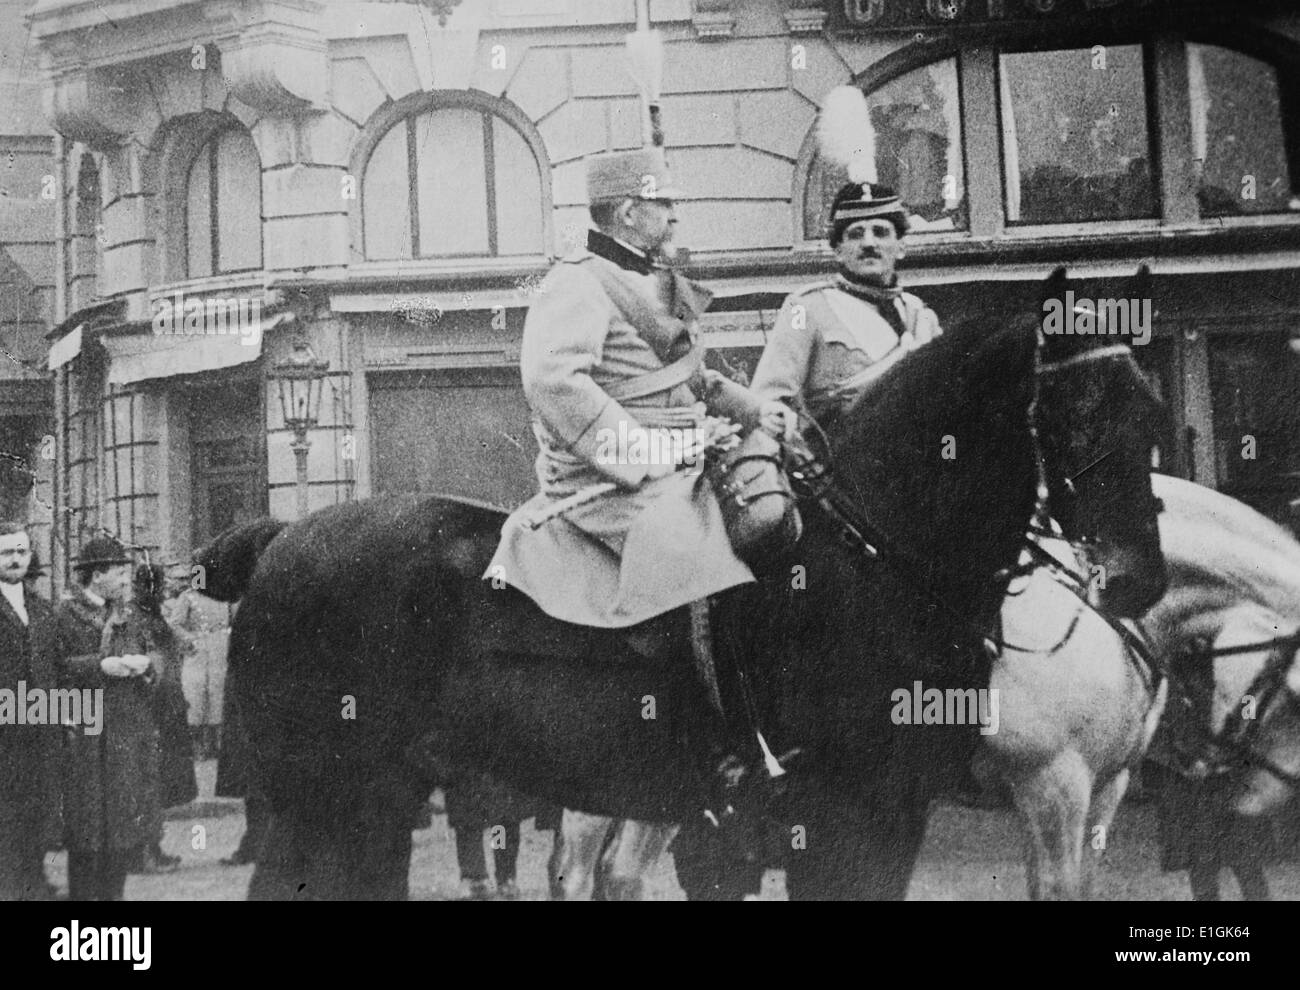 Alessandro I 1888 - 9 ottobre 1934) il principe reggente del regno di Serbia e più tardi un re di Iugoslavia dal 1921-34 (prima del 1929 il Regno era conosciuto come il Regno di Serbi, Croati e Sloveni) Foto Stock